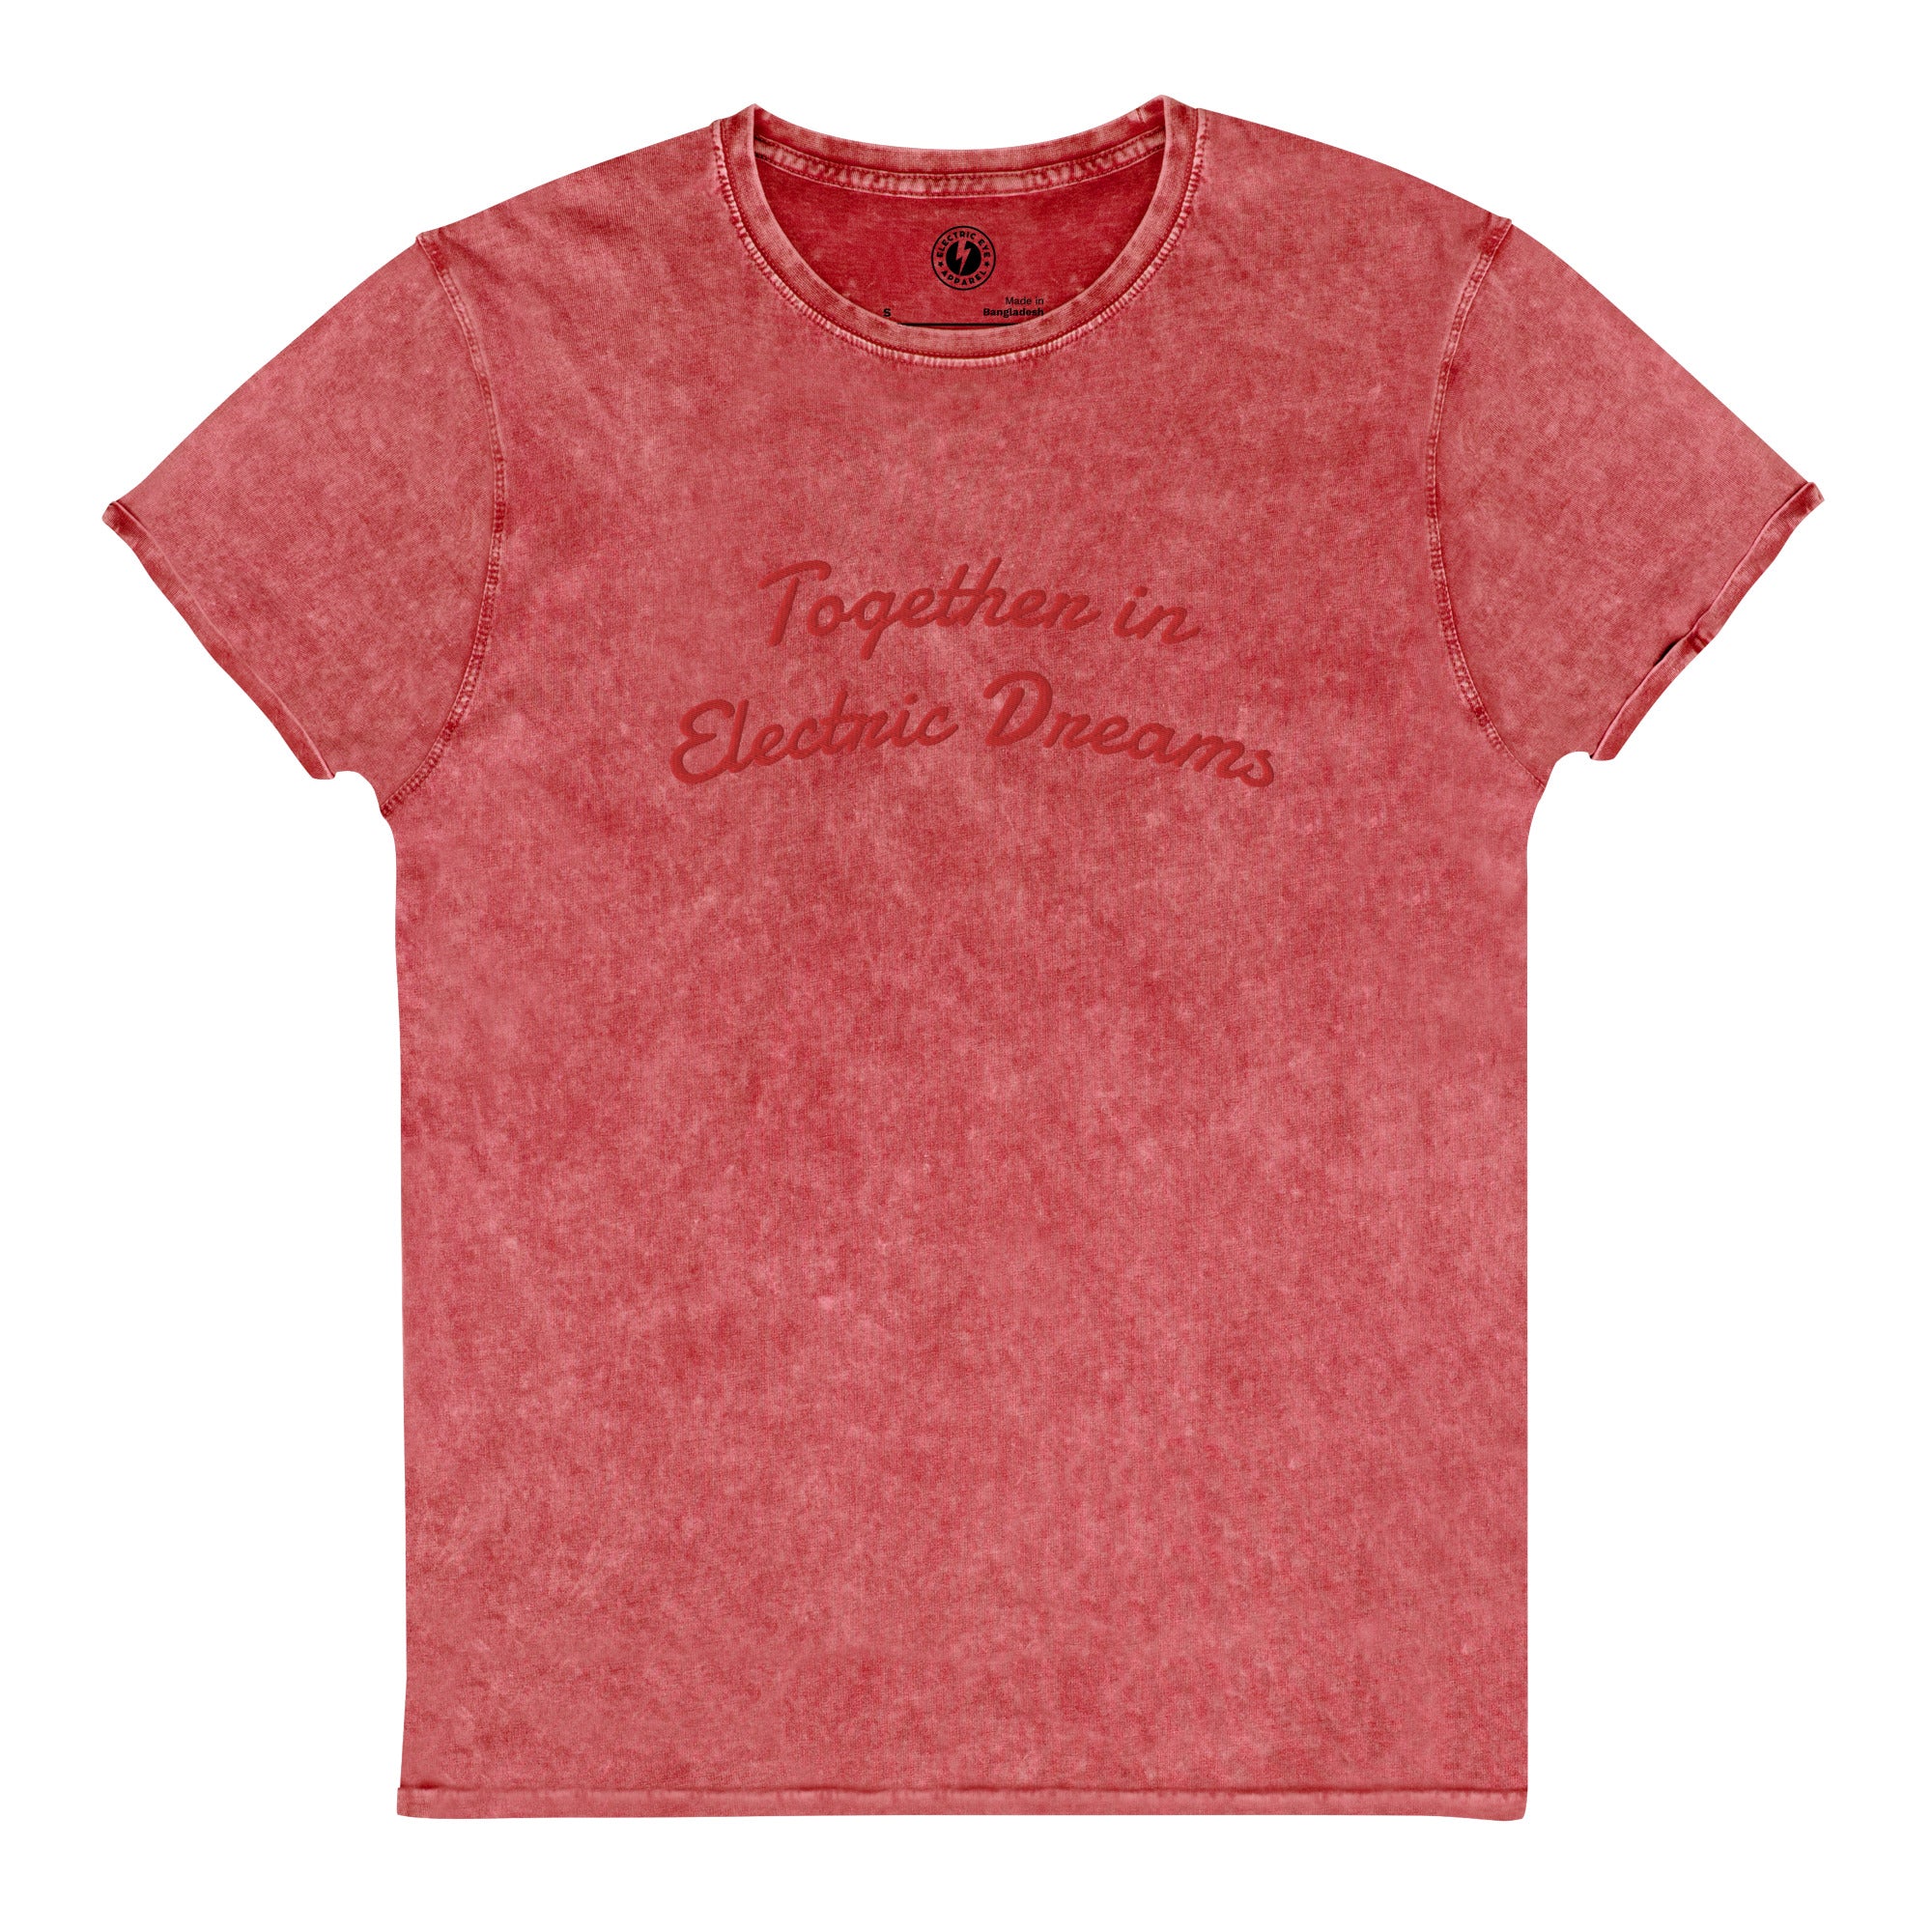 JUNTOS EN SUEÑOS ELÉCTRICOS Camiseta unisex estilo denim envejecido vintage bordada (texto rojo)